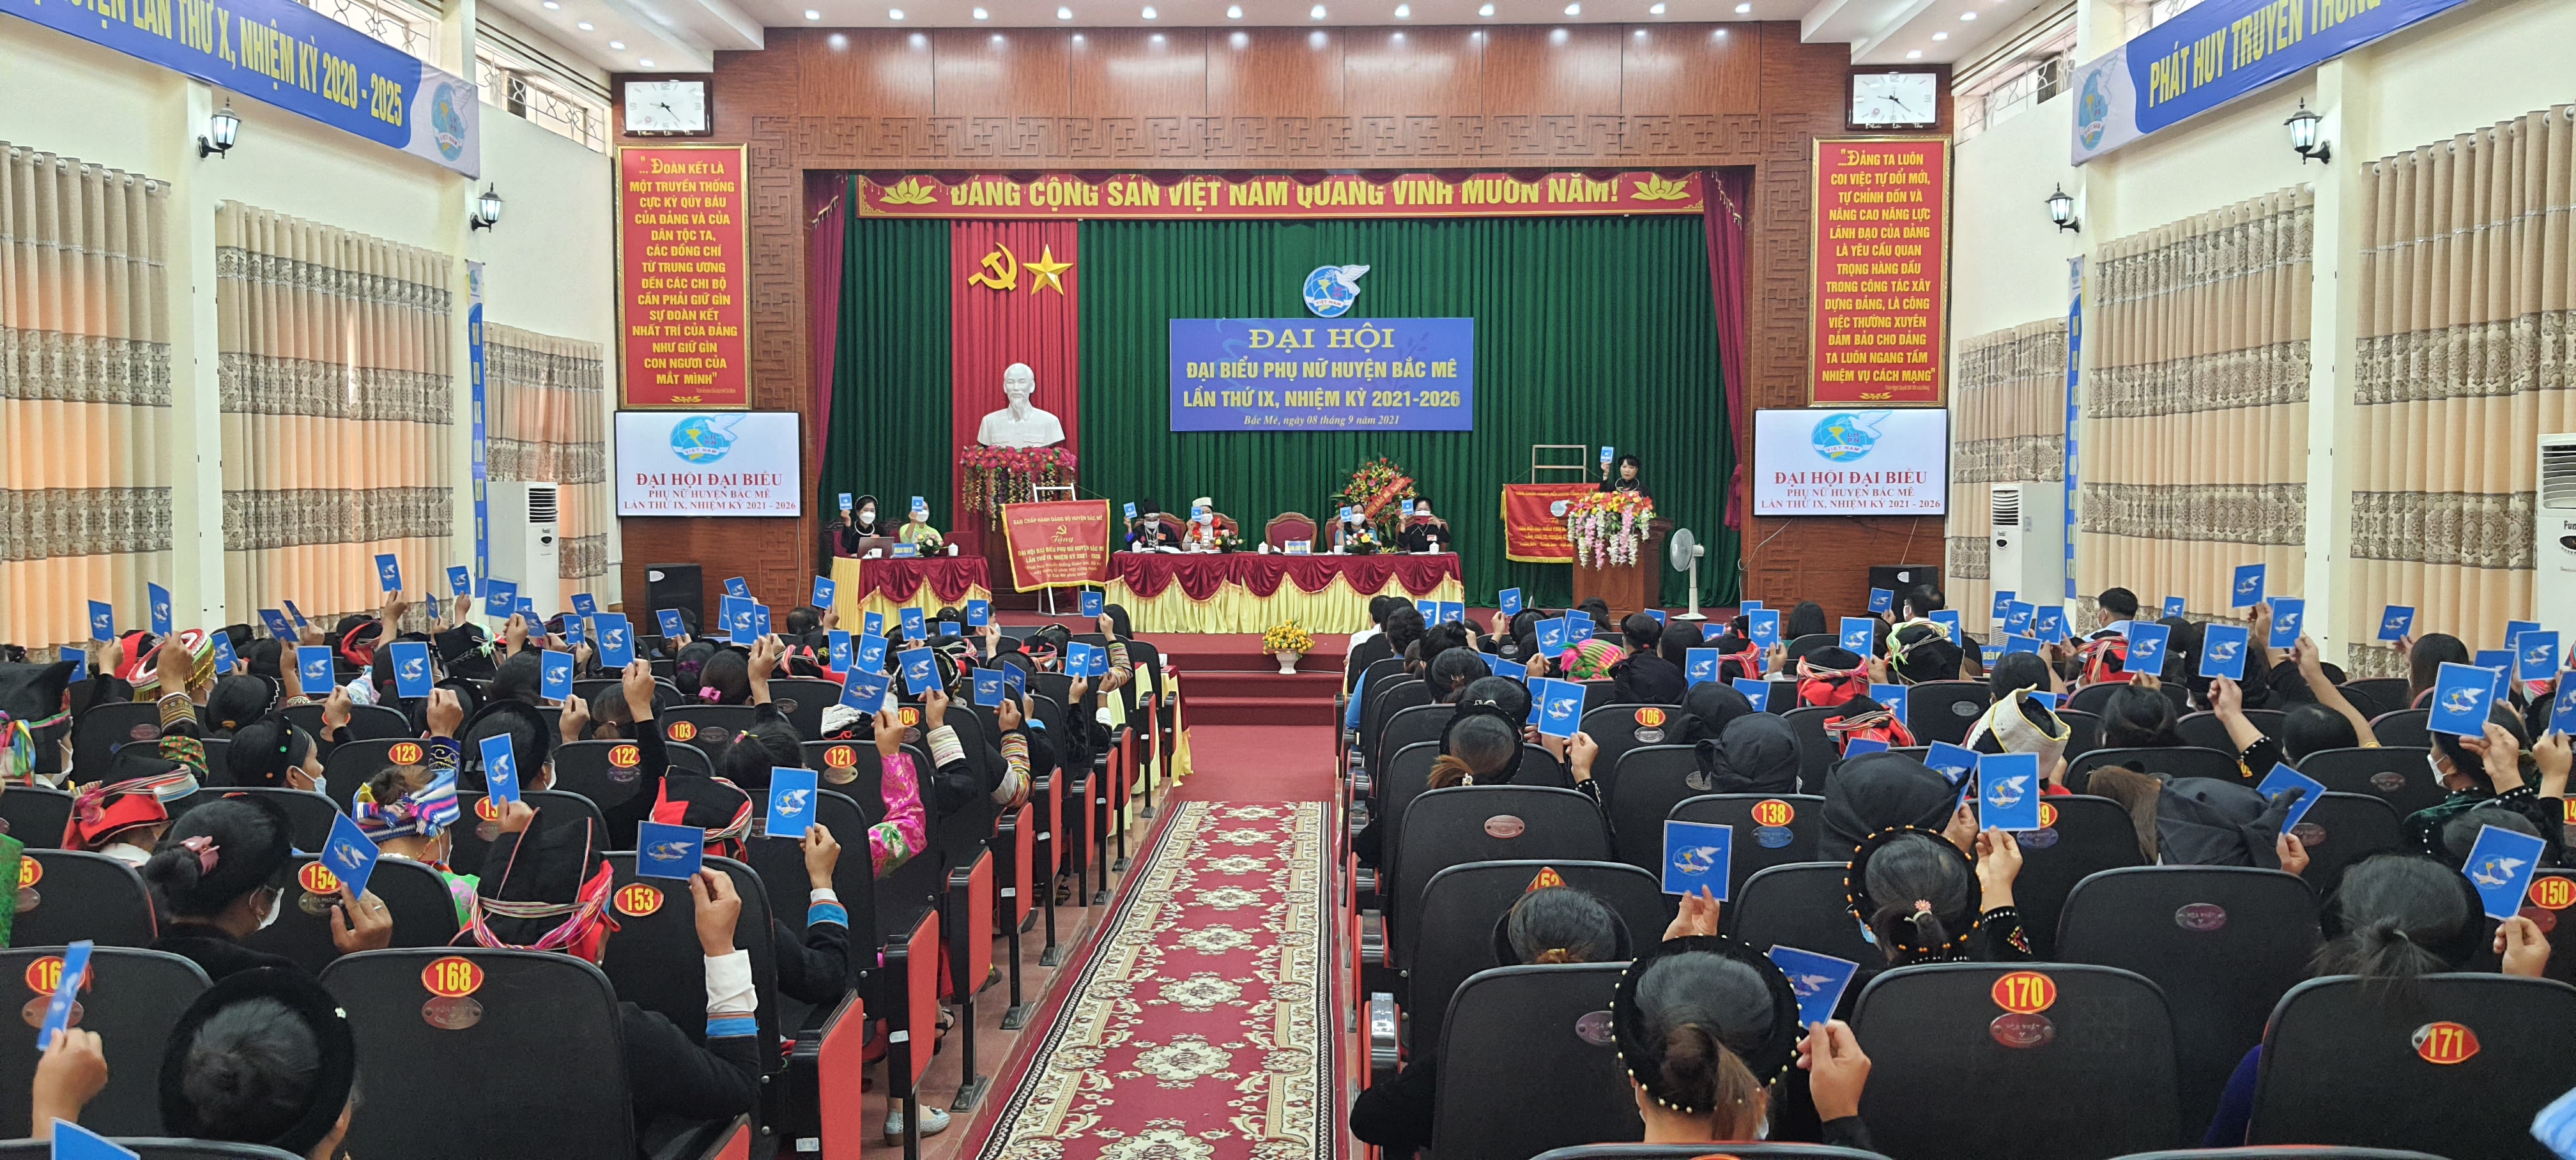 Đại hội đại biểu Hội LHPN huyện Bắc Mê lần thứ IX, nhiệm kỳ 2021 - 2026